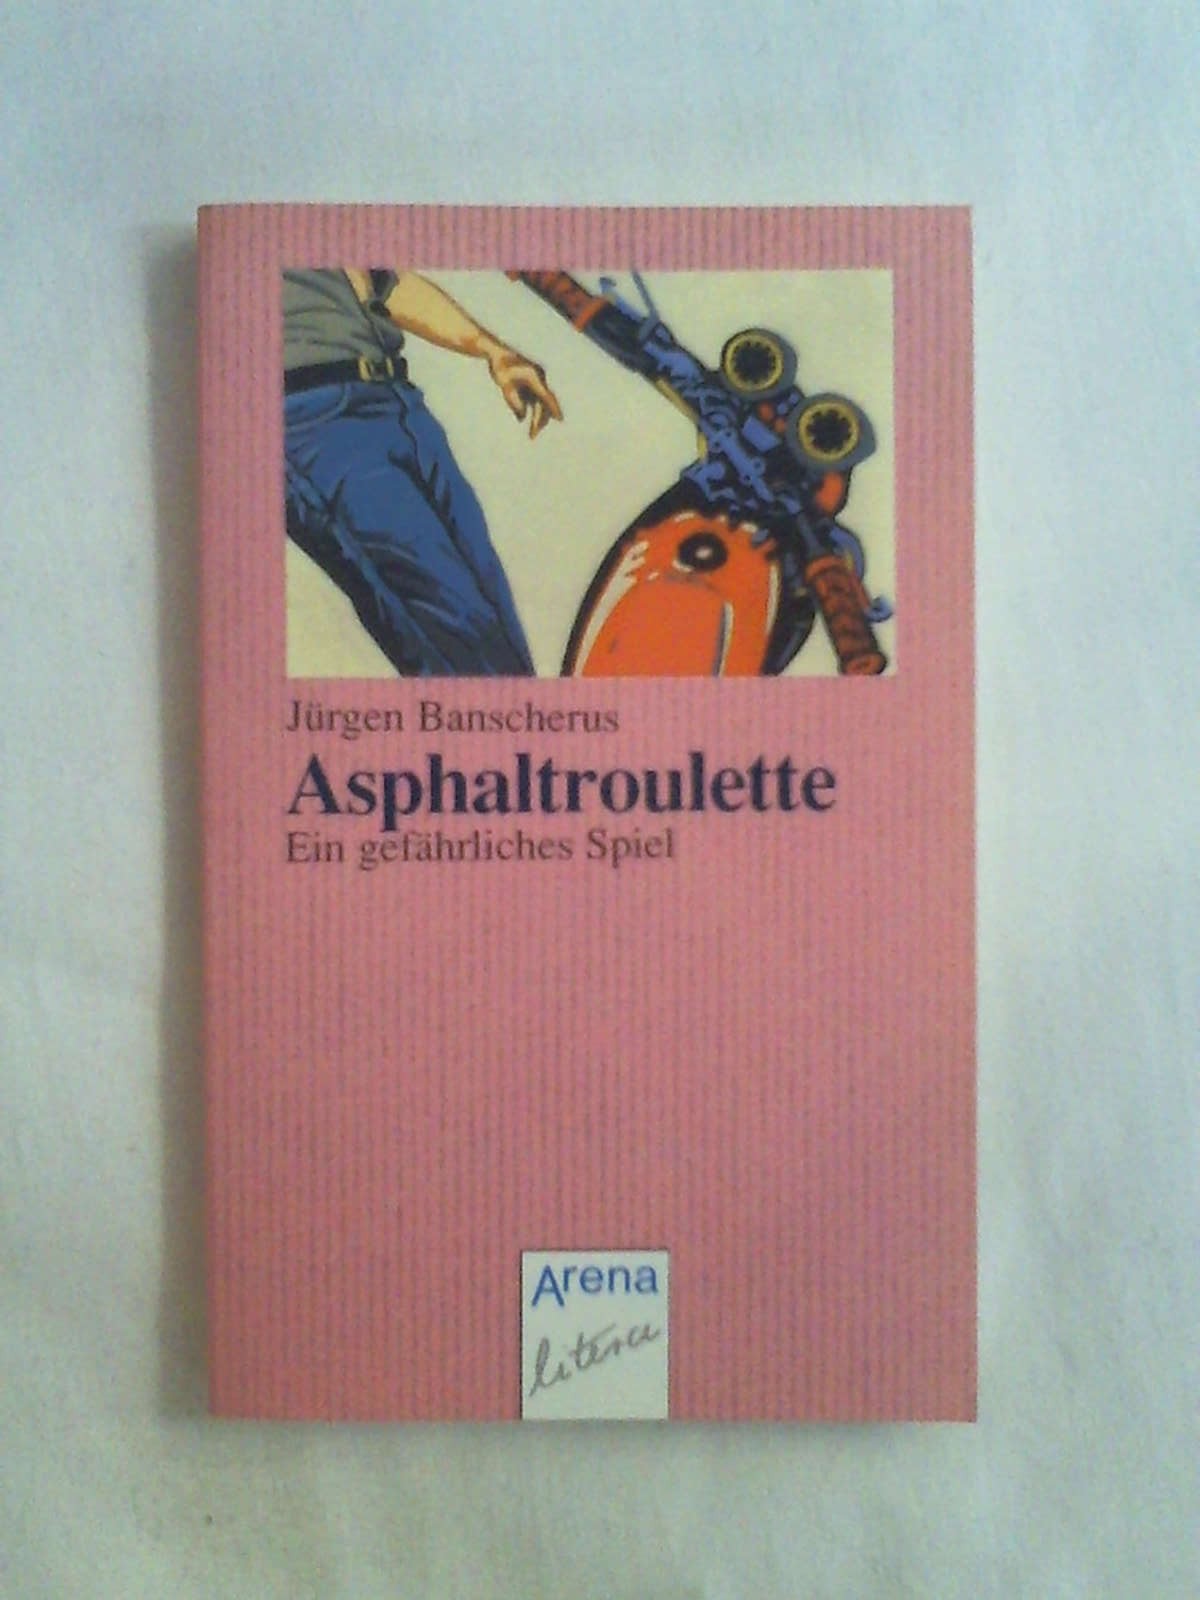 Asphaltroulette (Arena life). - Jürgen Banscherus